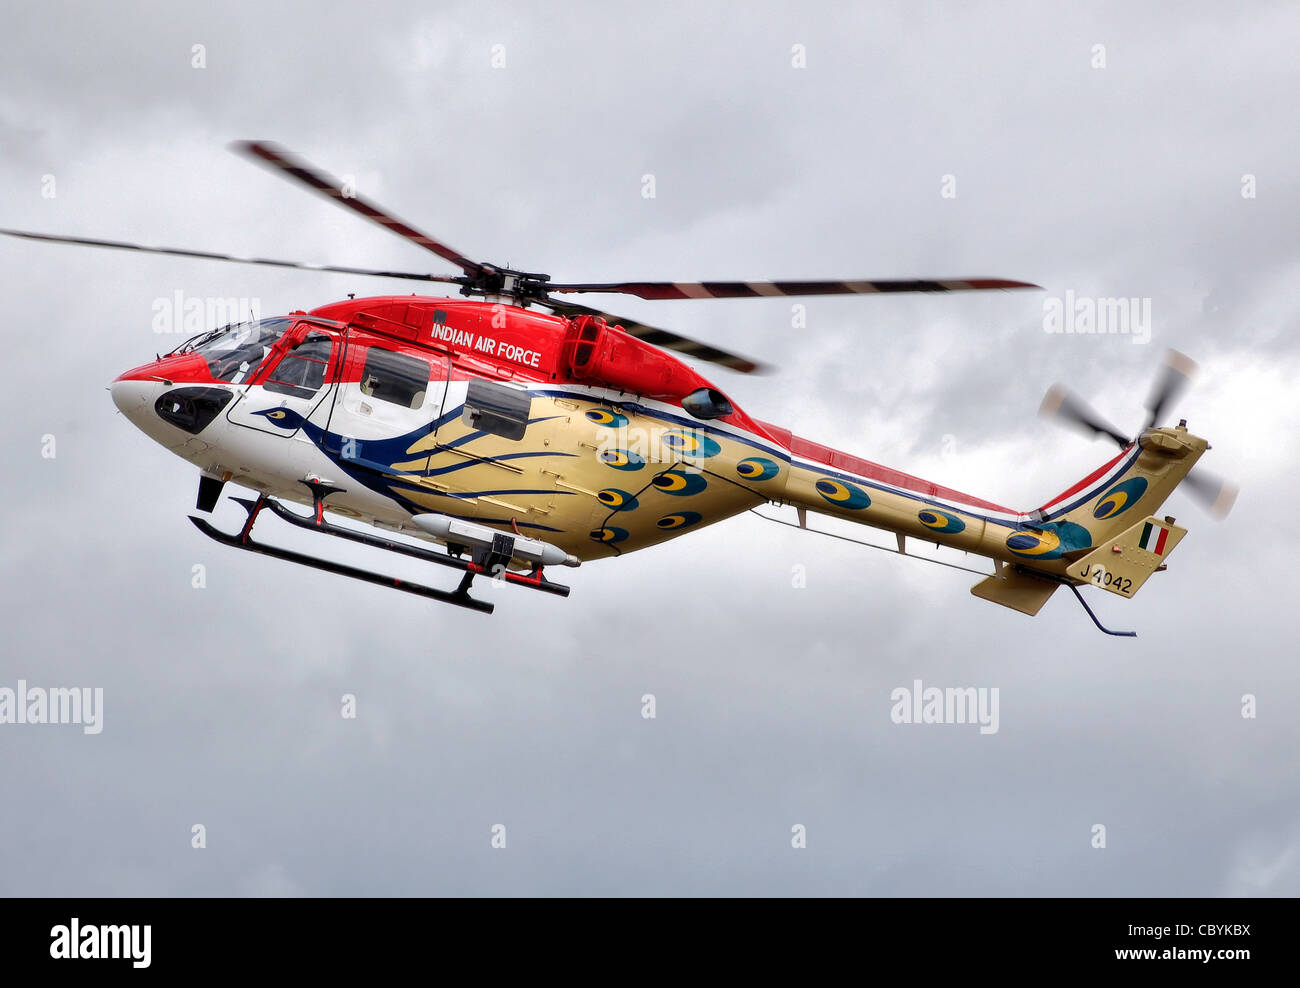 Hindustan ALH Druv Hubschrauber (Code J4042) von Sarang Helicopter Display Team der Indian Air Force bei der Royal International Stockfoto